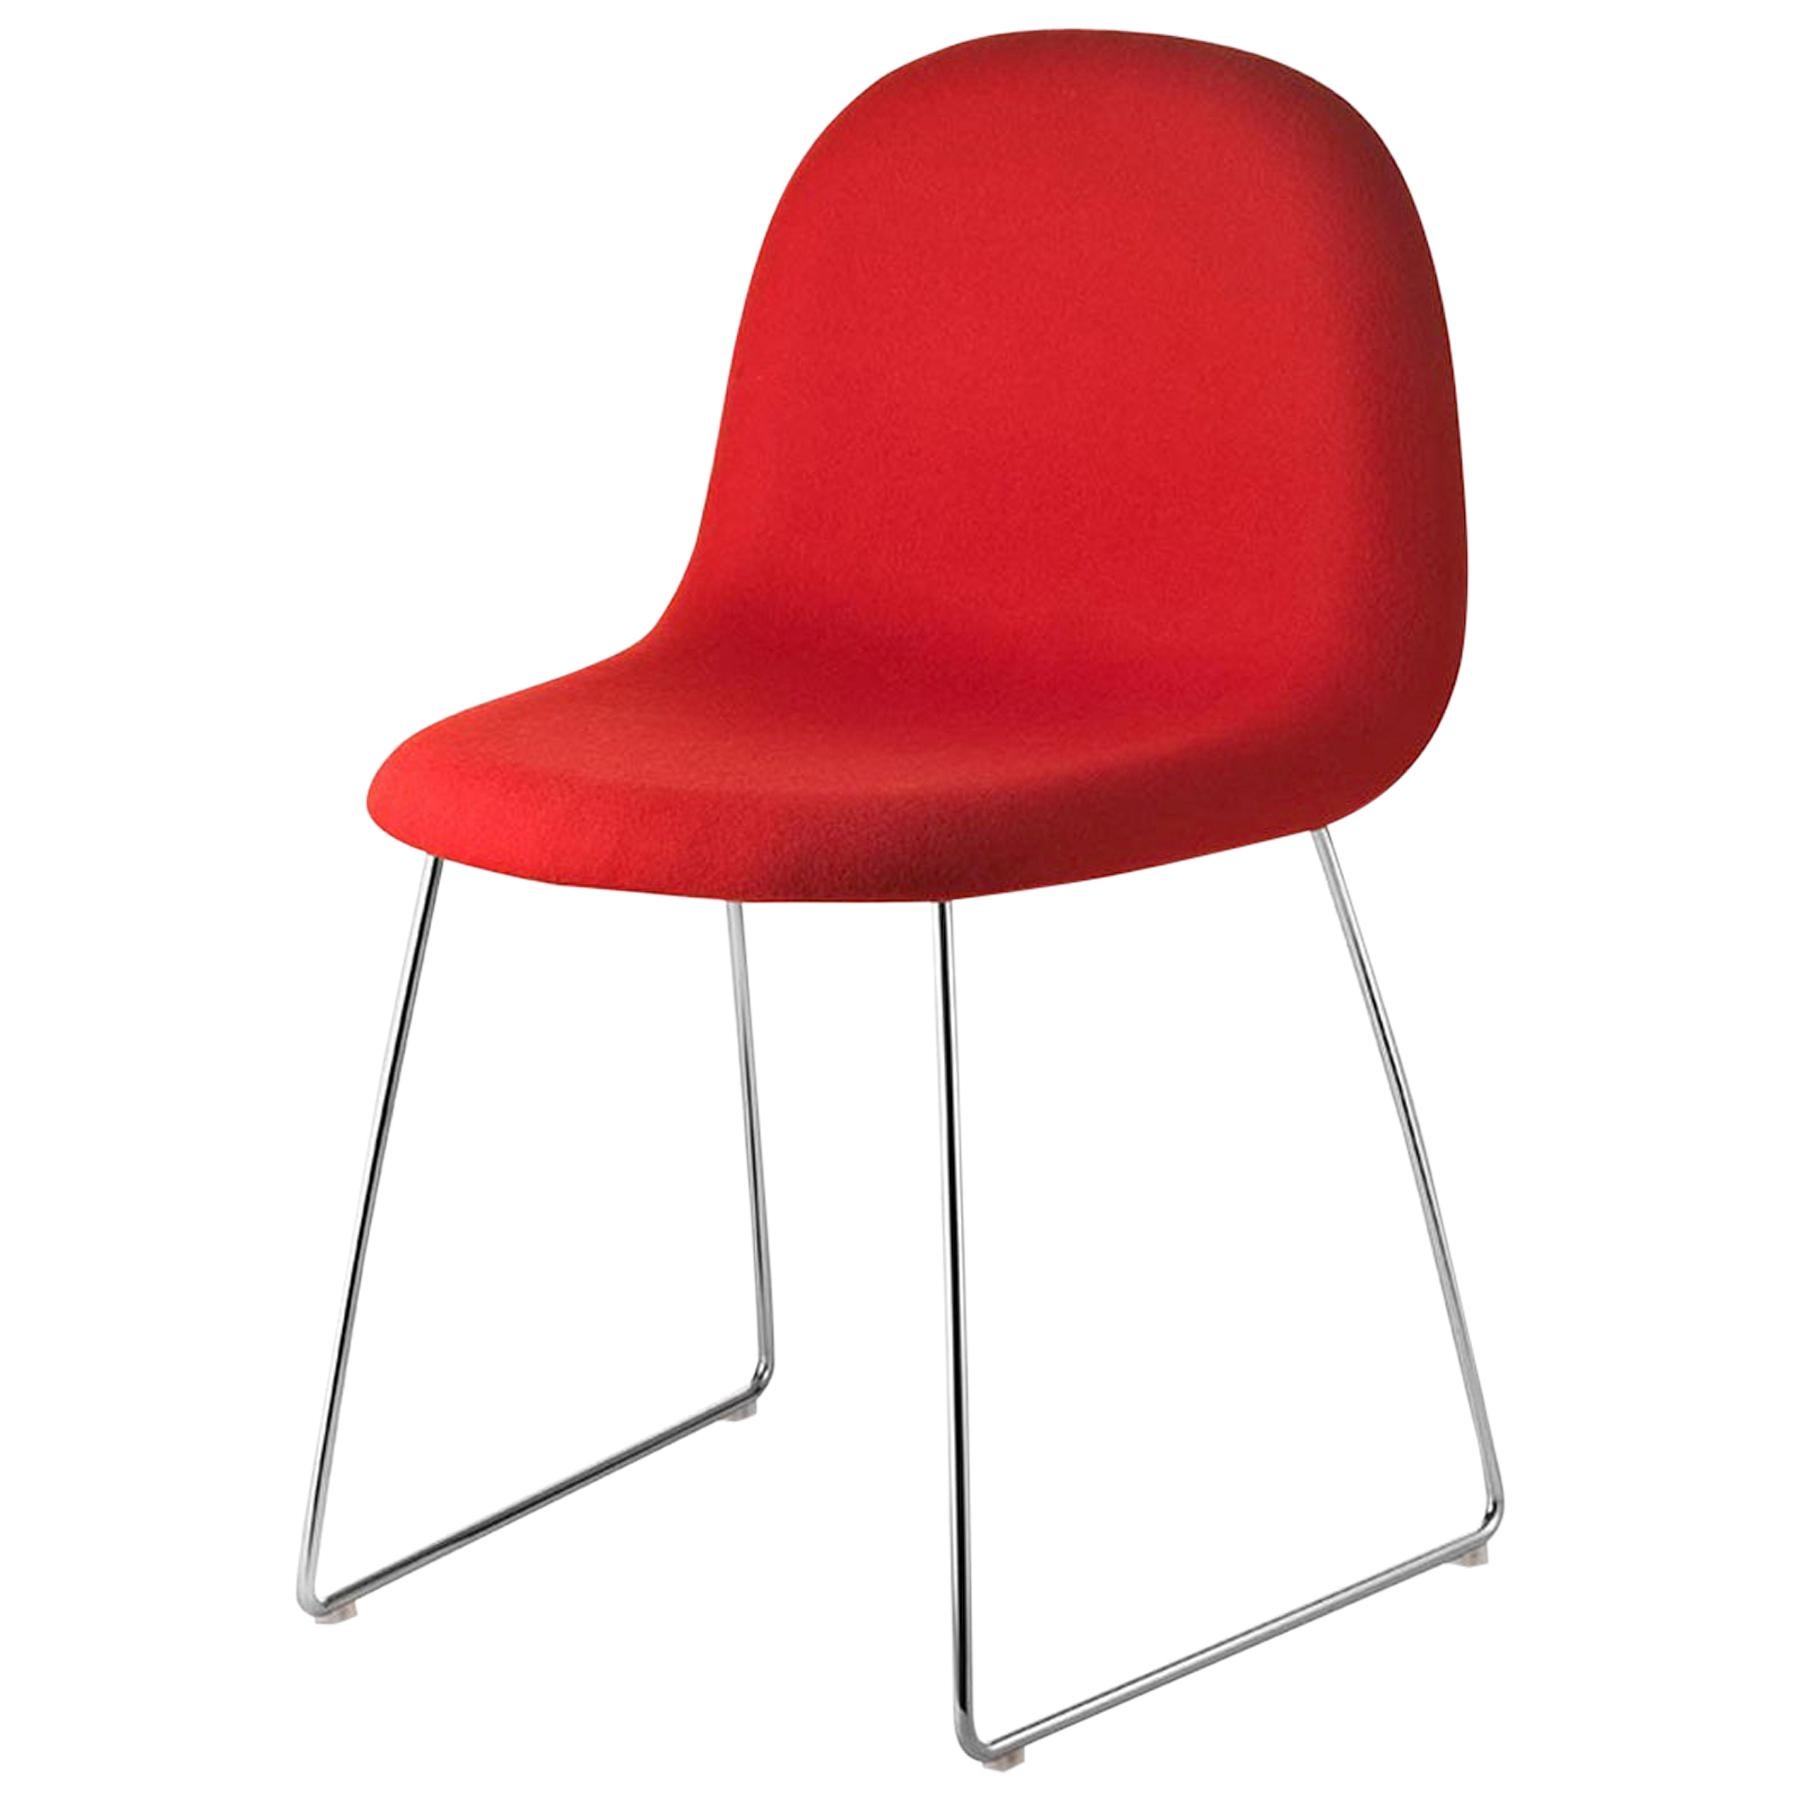 3D Dining Chair, Fully Upholstered, Sledge Base, Chrome